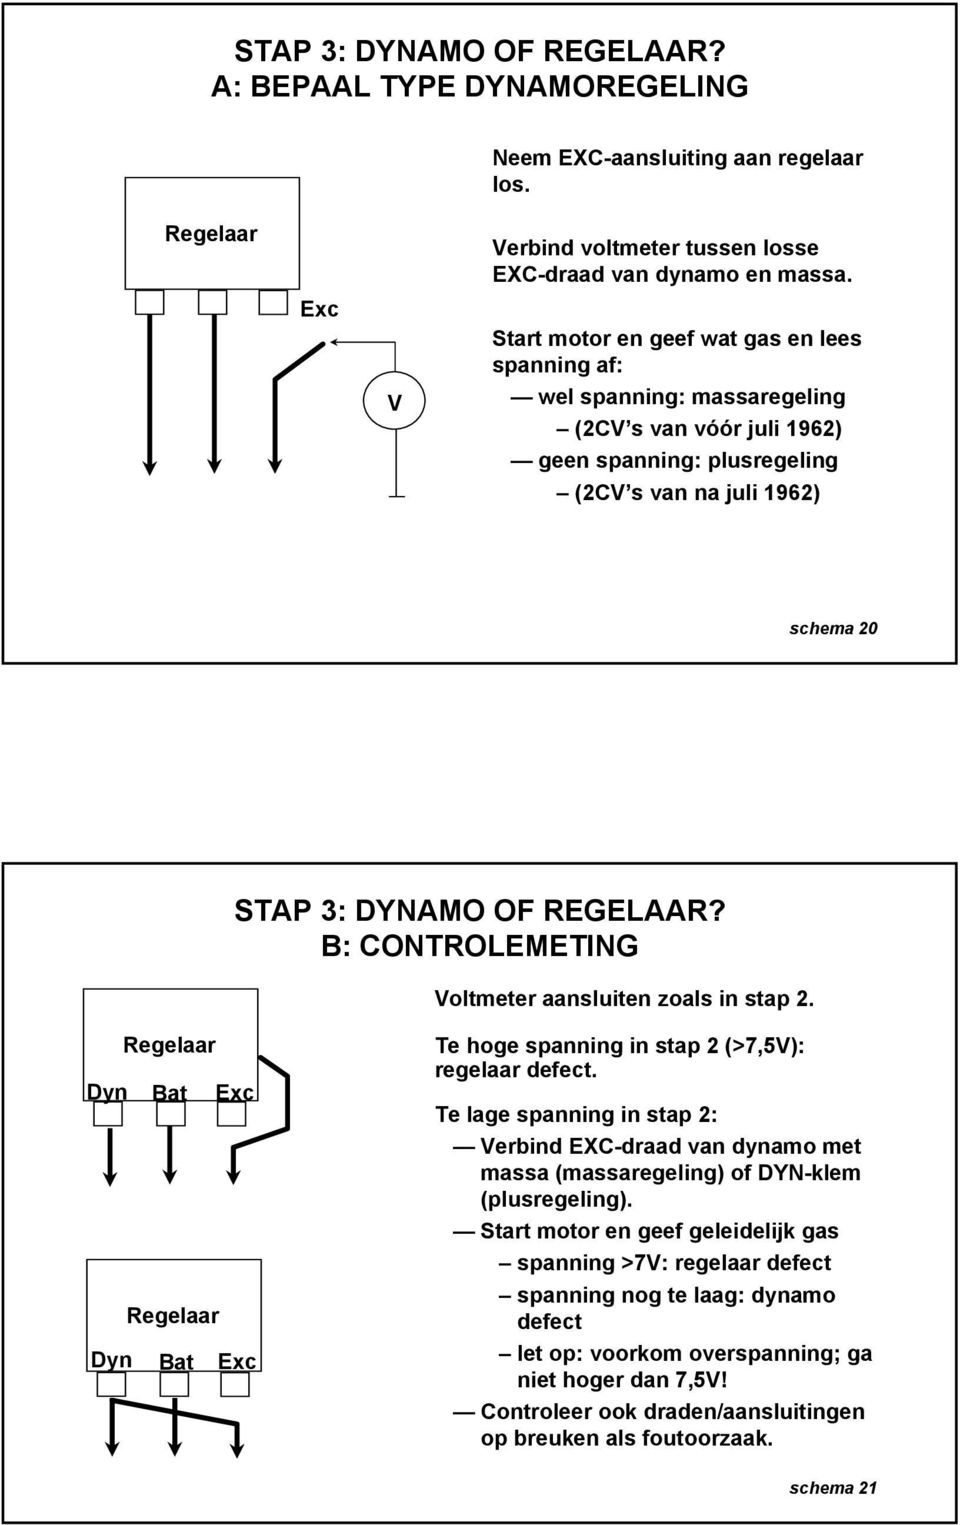 B: CONTROLEMETING Voltmeter aansluiten zoals in stap 2. Regelaar Dyn Bat Exc Regelaar Dyn Bat Exc Te hoge spanning in stap 2 (>7,5V): regelaar defect.